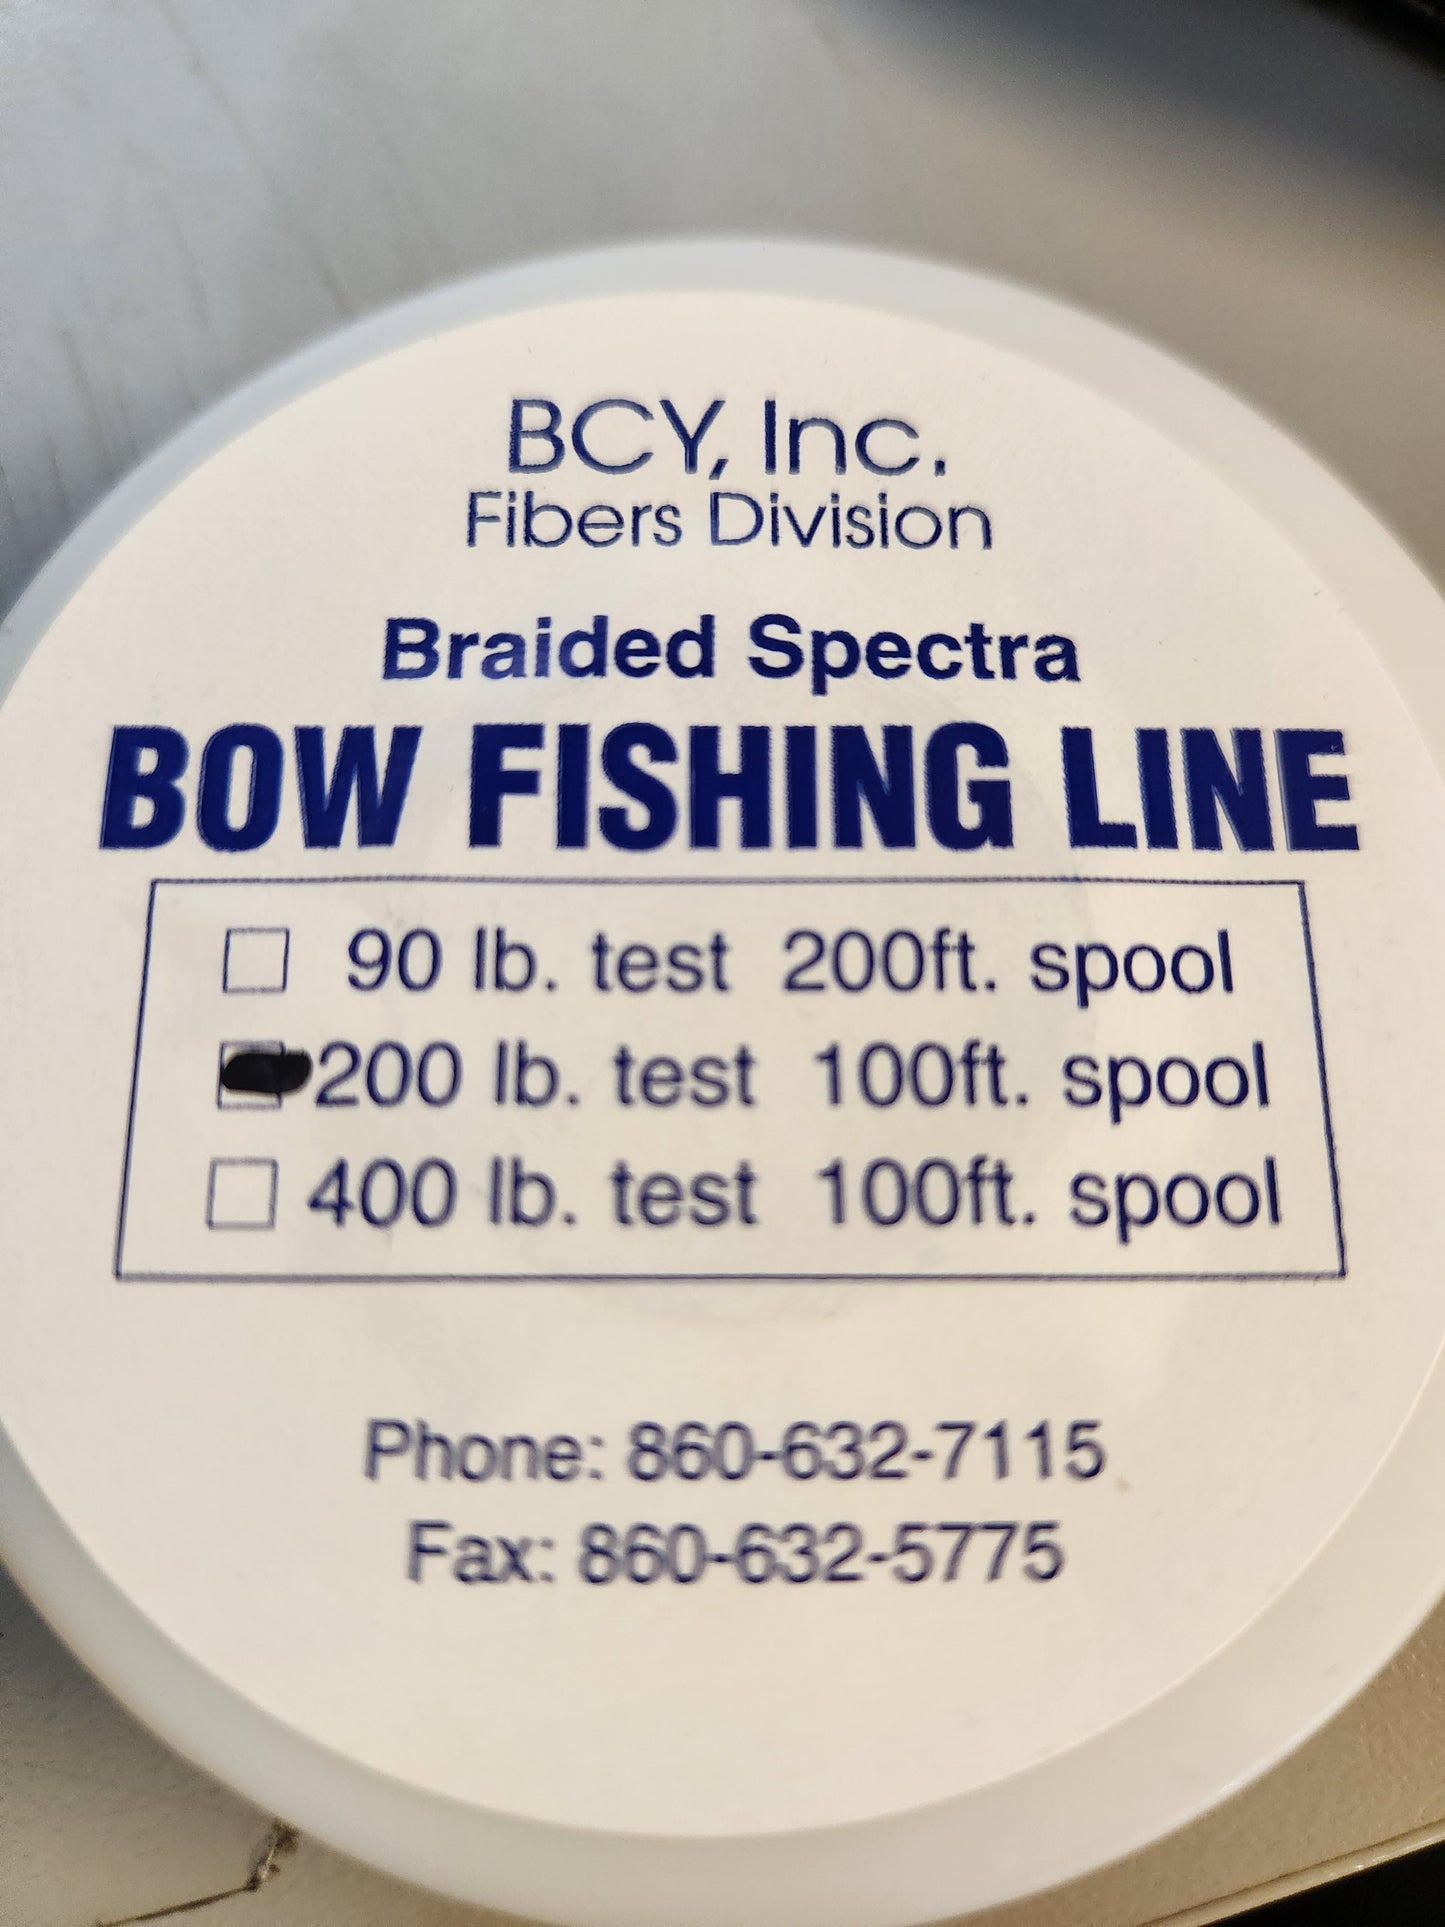 Bowfishing line